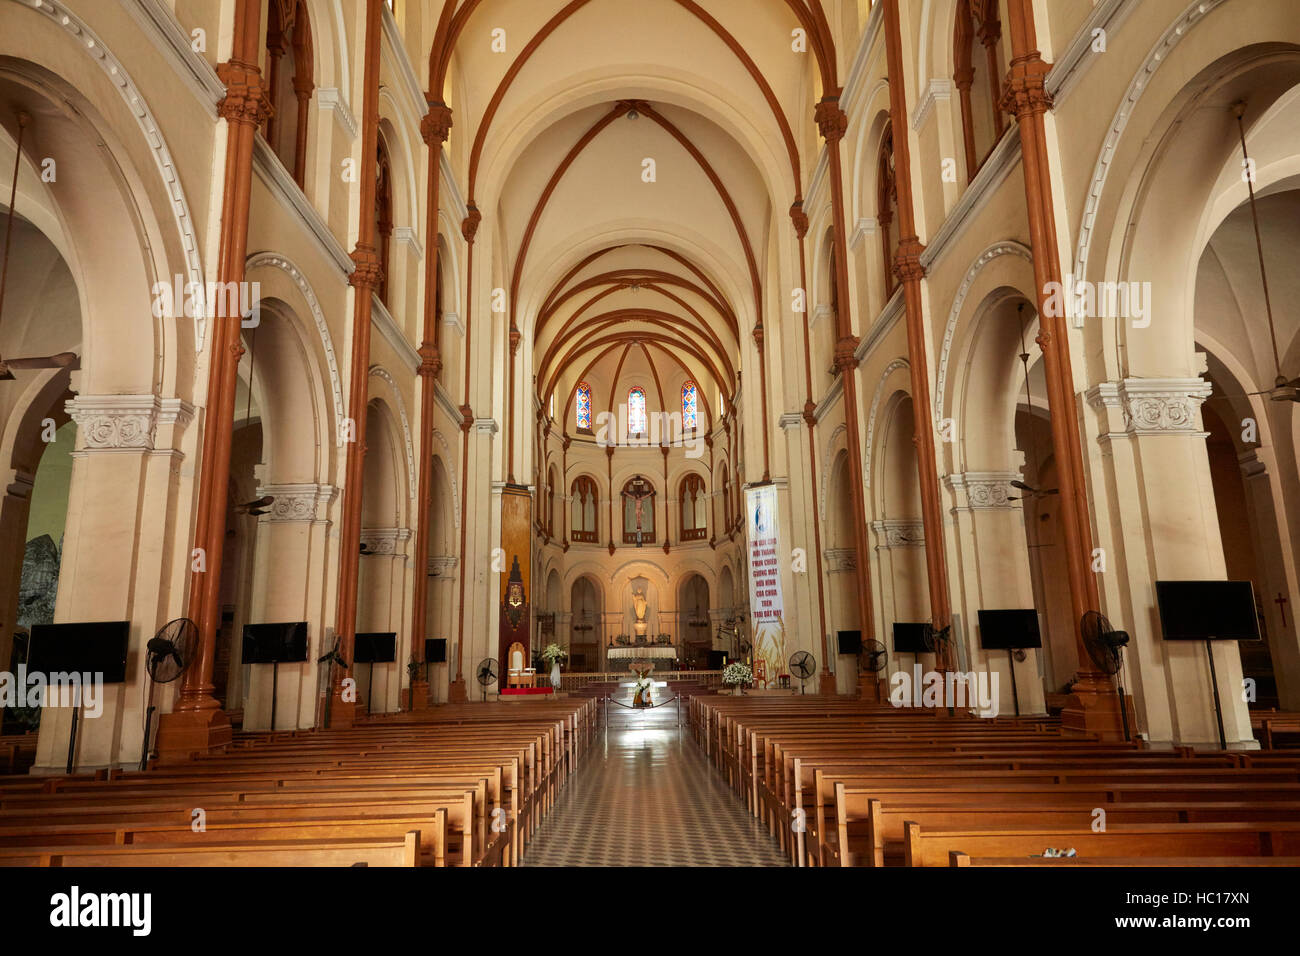 Interior of Notre-Dame Cathedral Basilica of Saigon, Ho Chi Minh City (Saigon), Vietnam Stock Photo